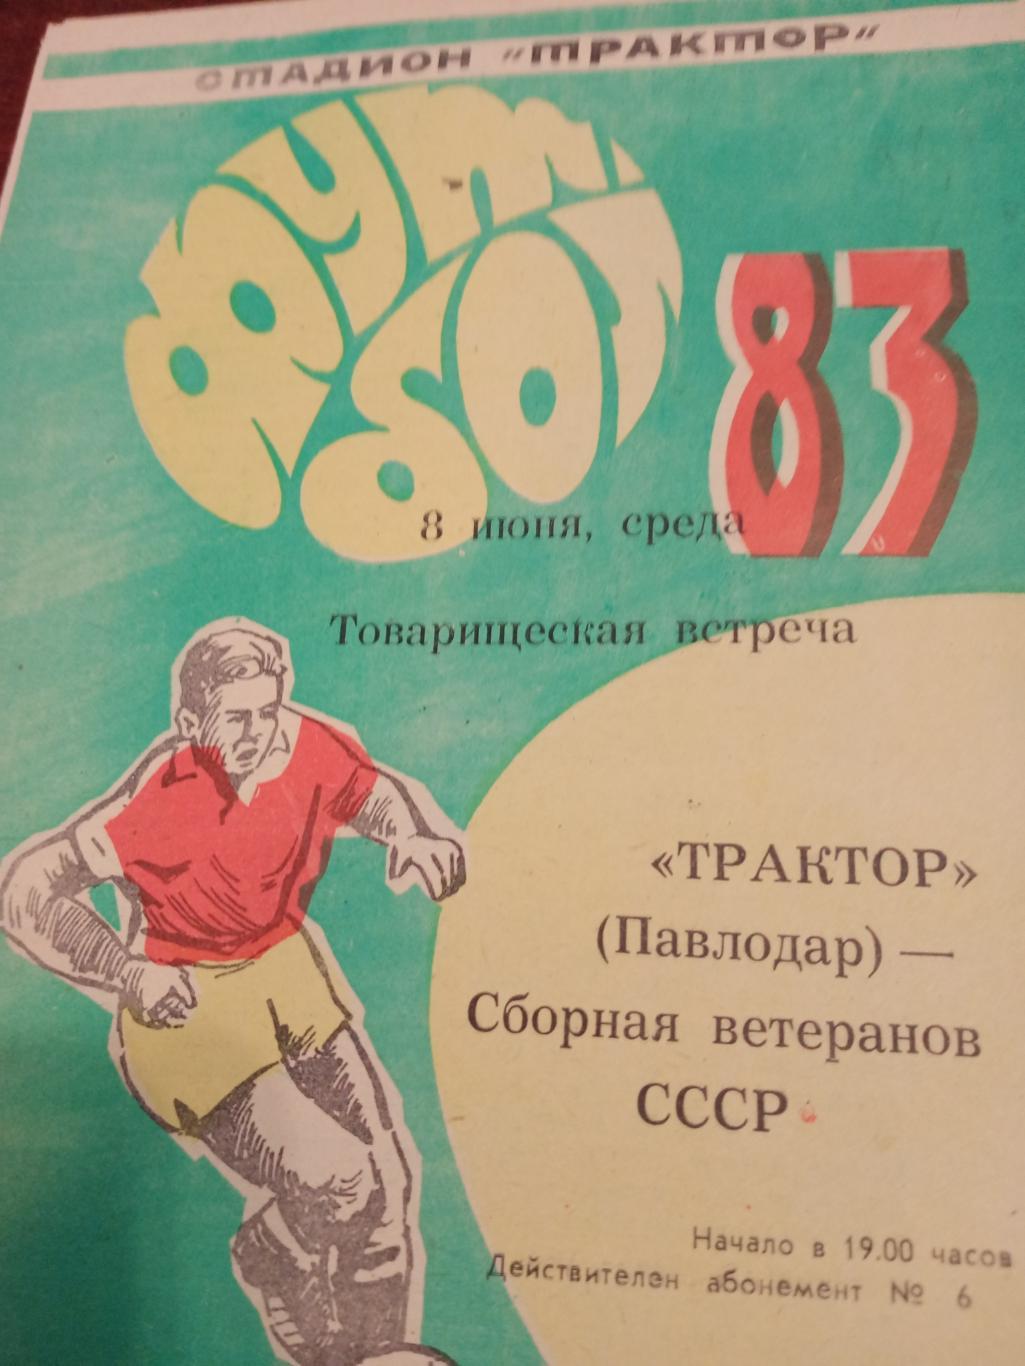 Трактор Павлодар - Сборная ветеранов СССР - 8.06.83